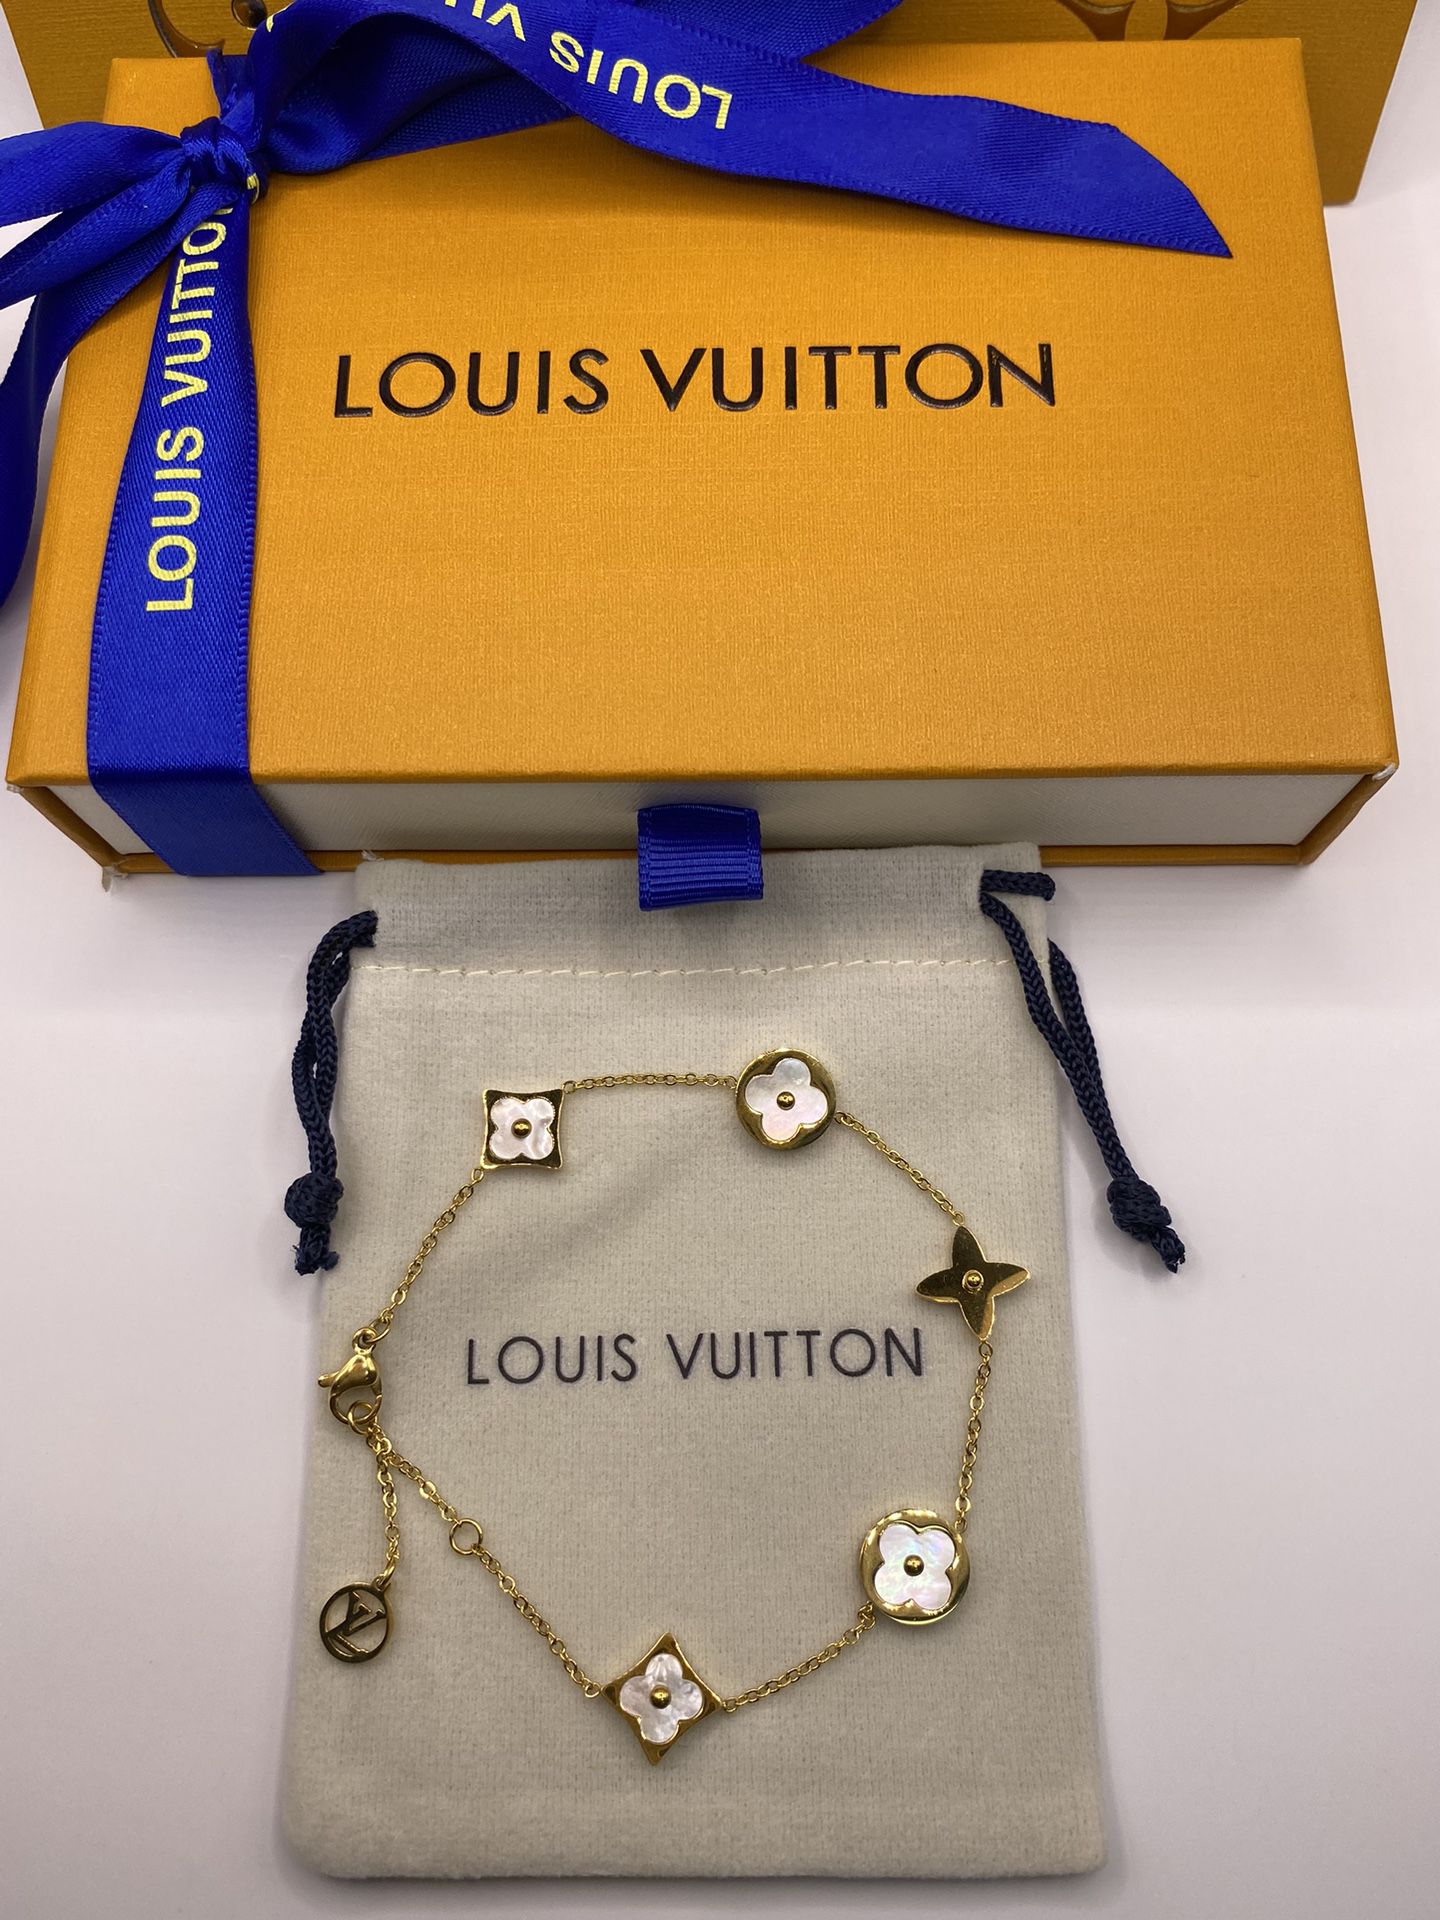 Louis Vuitton men's Bracelet for Sale in Henderson, NV - OfferUp